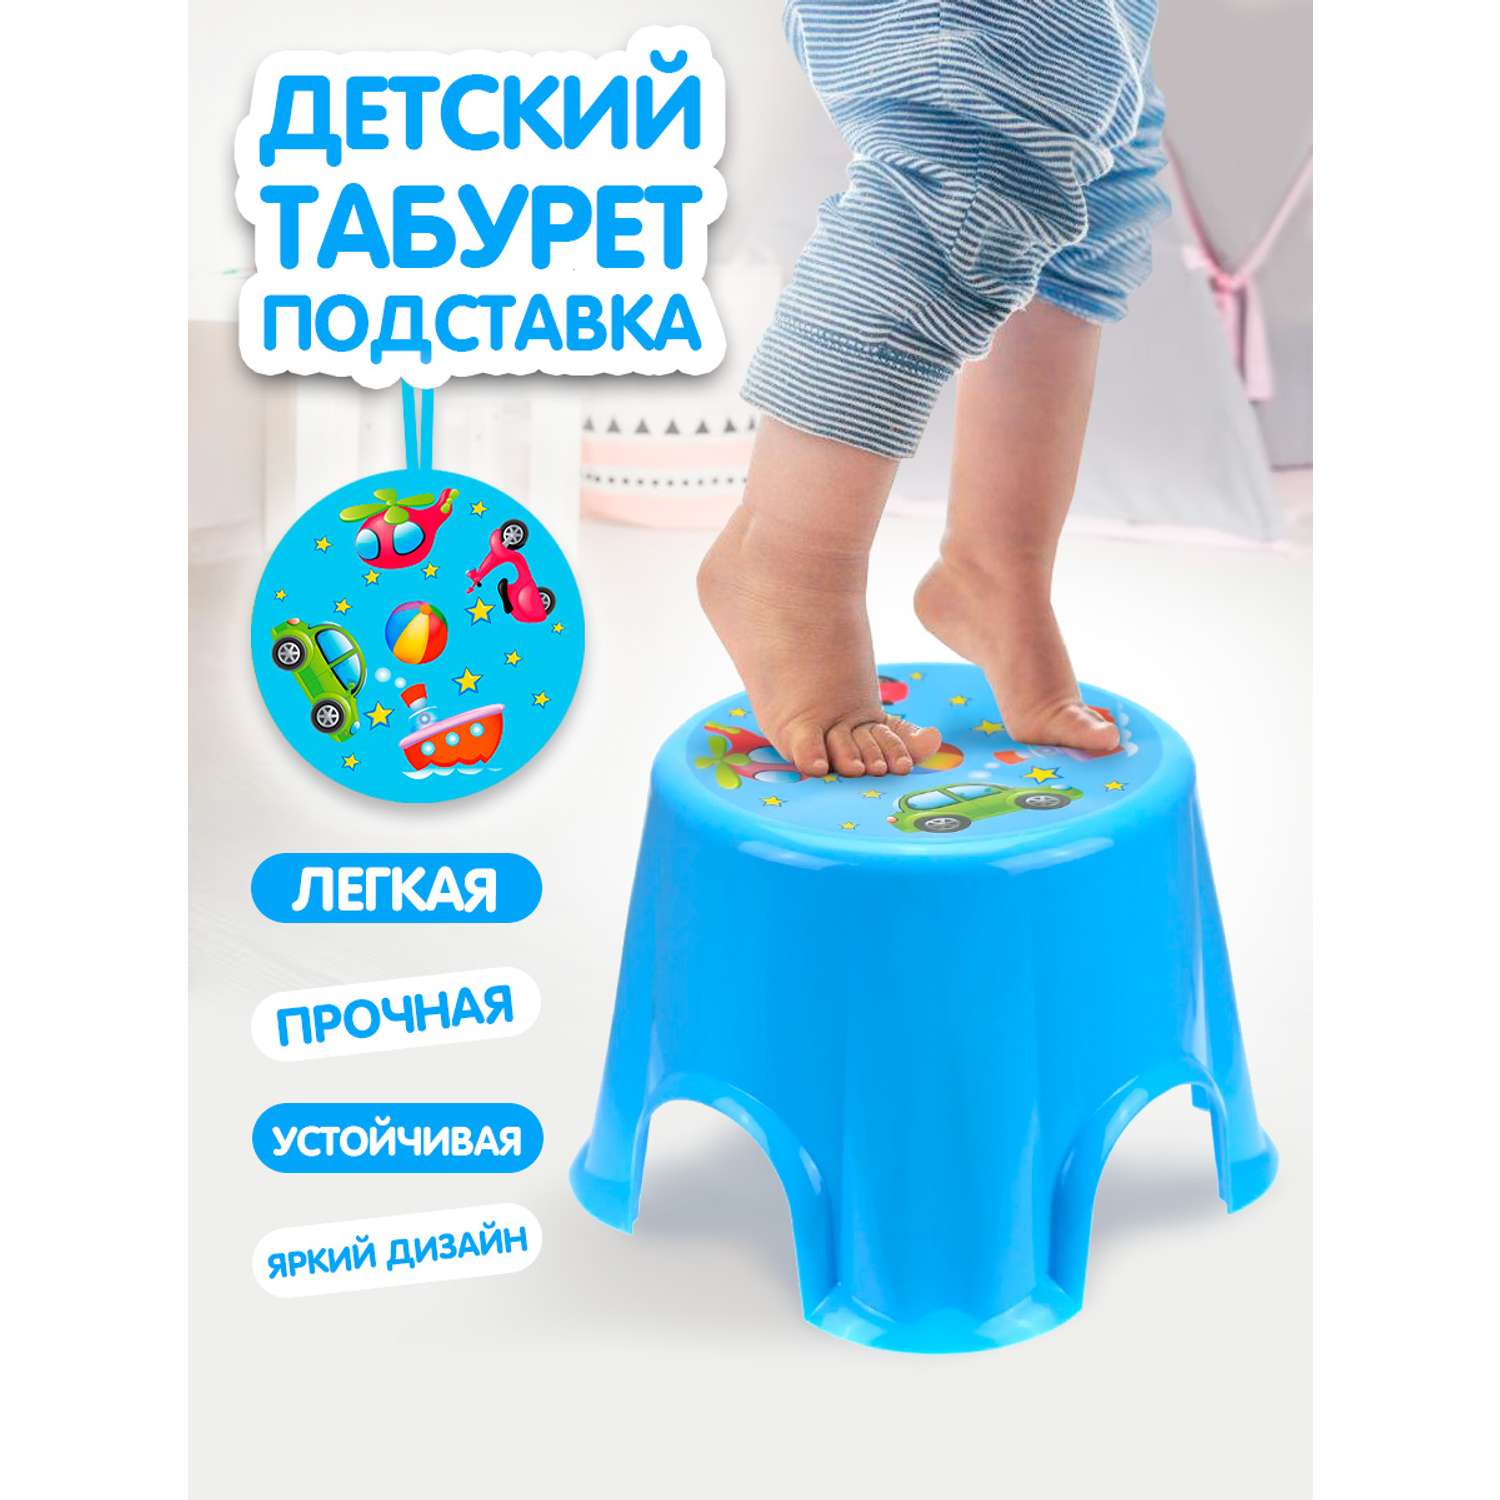 Табурет elfplast стульчик Пенёк детский с рисунком голубой - фото 1